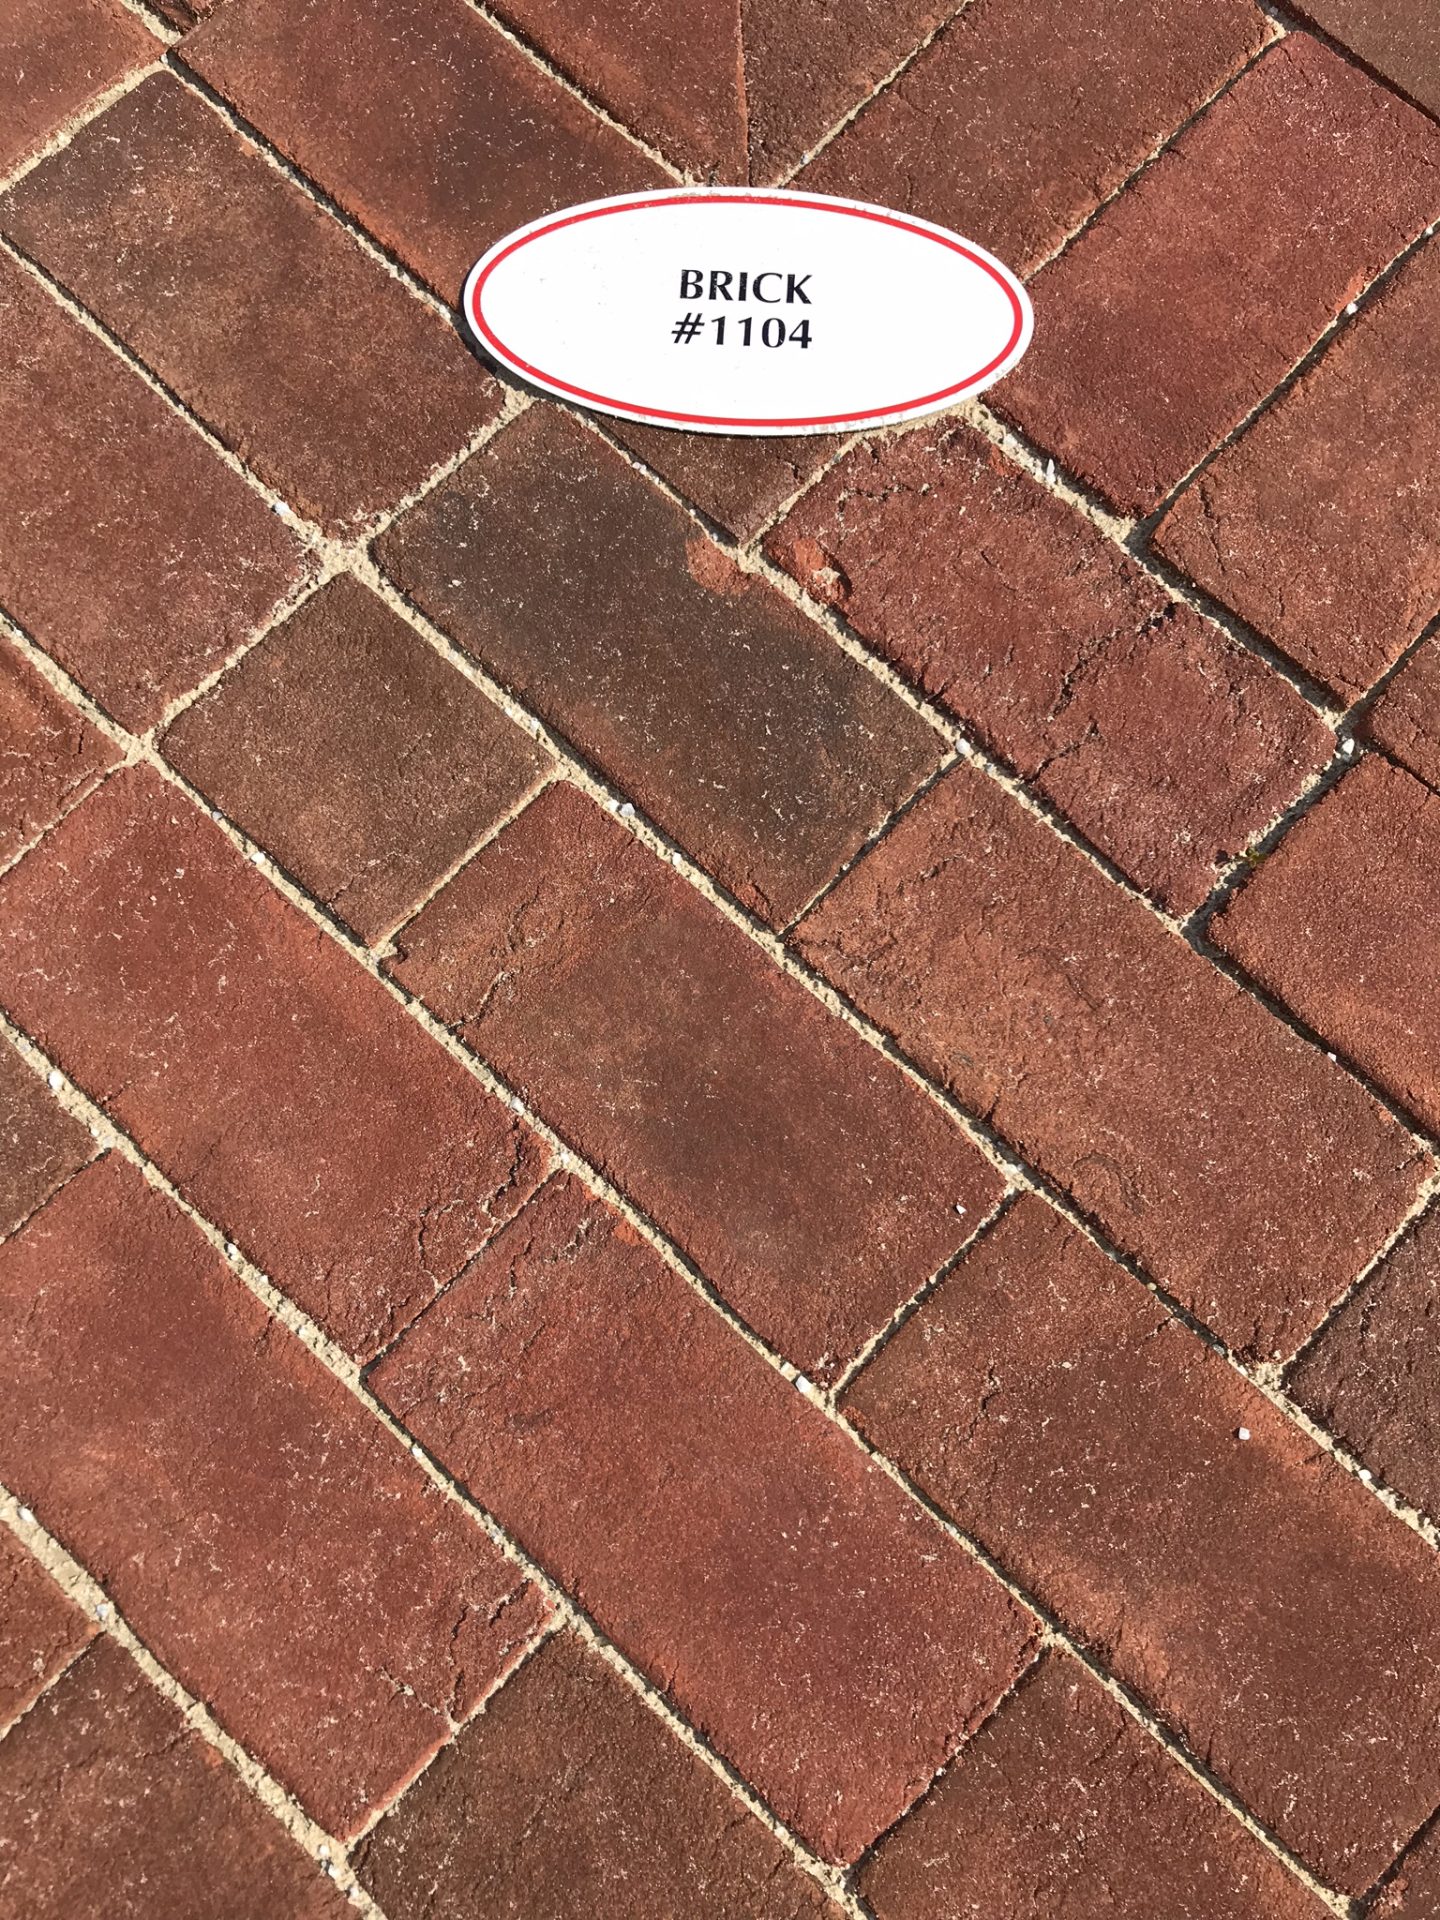 Brick #1104 paver